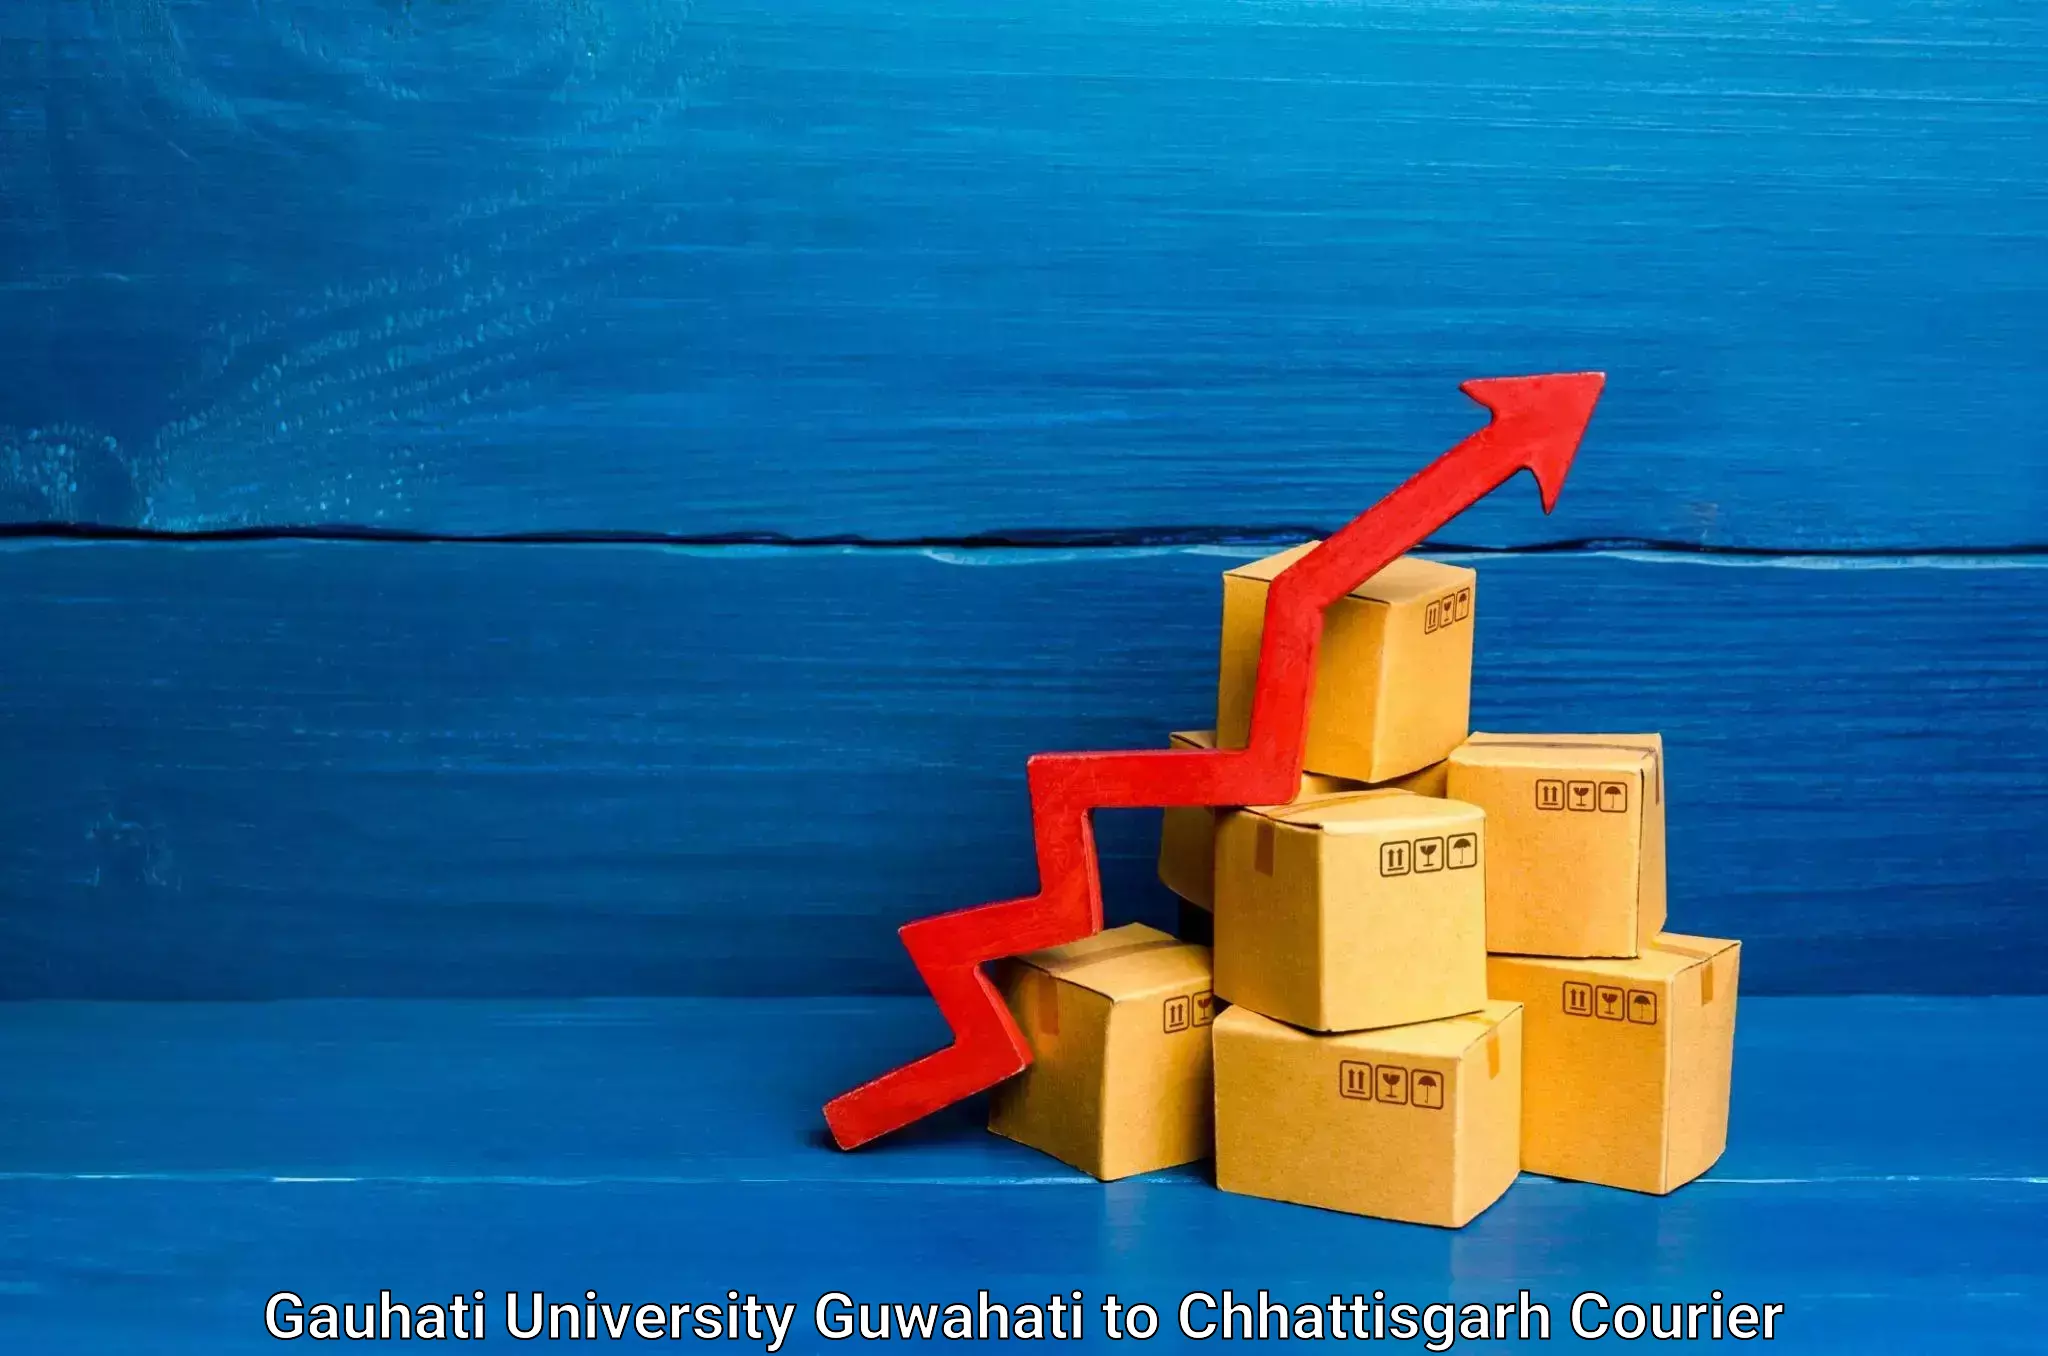 Global logistics network Gauhati University Guwahati to Chhattisgarh